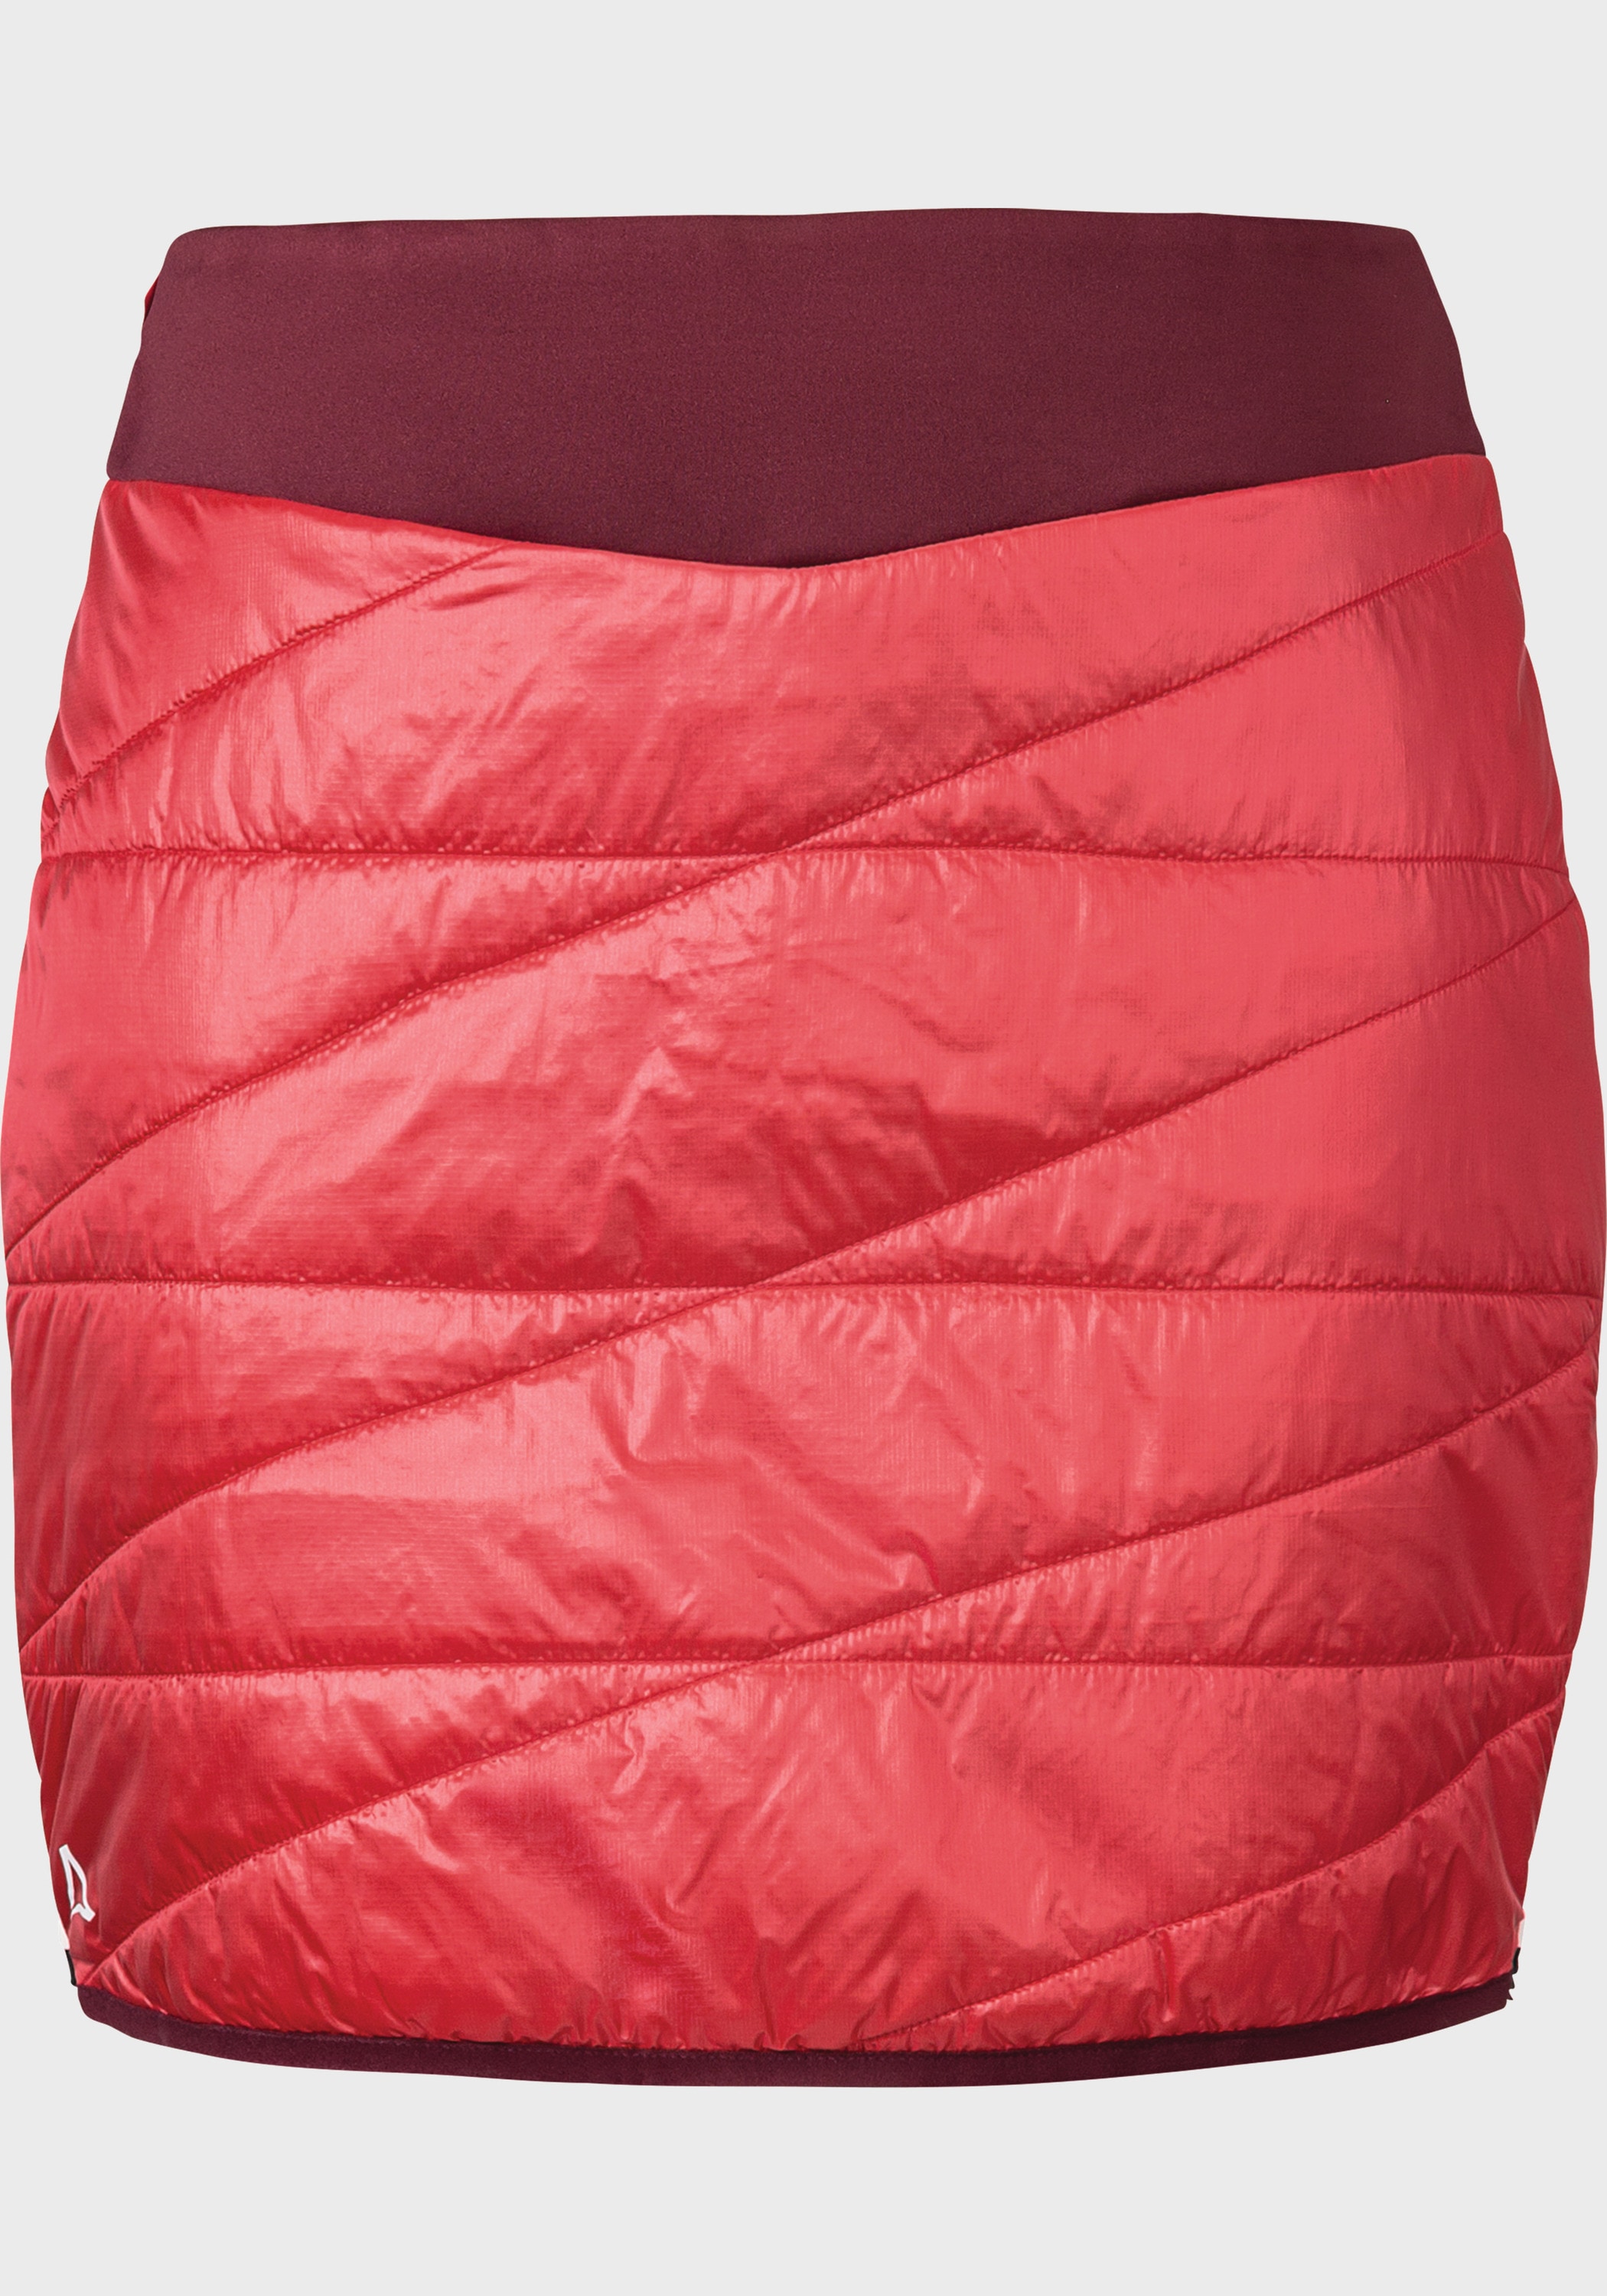 Schöffel Sweatrock bei OTTO kaufen »Thermo L« Skirt Stams